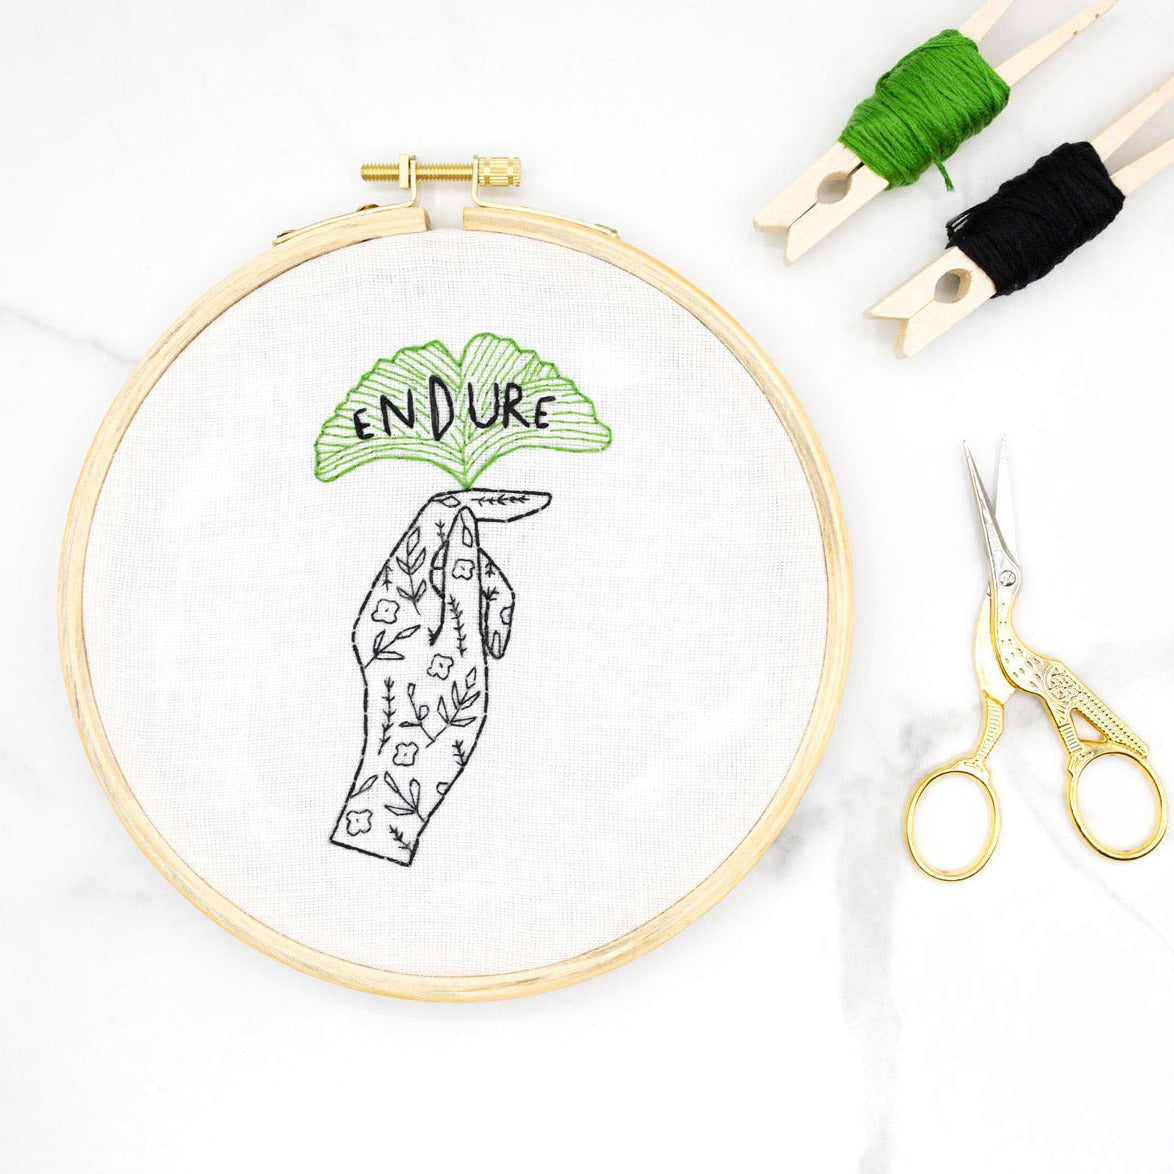 Endure Embroidery Kit